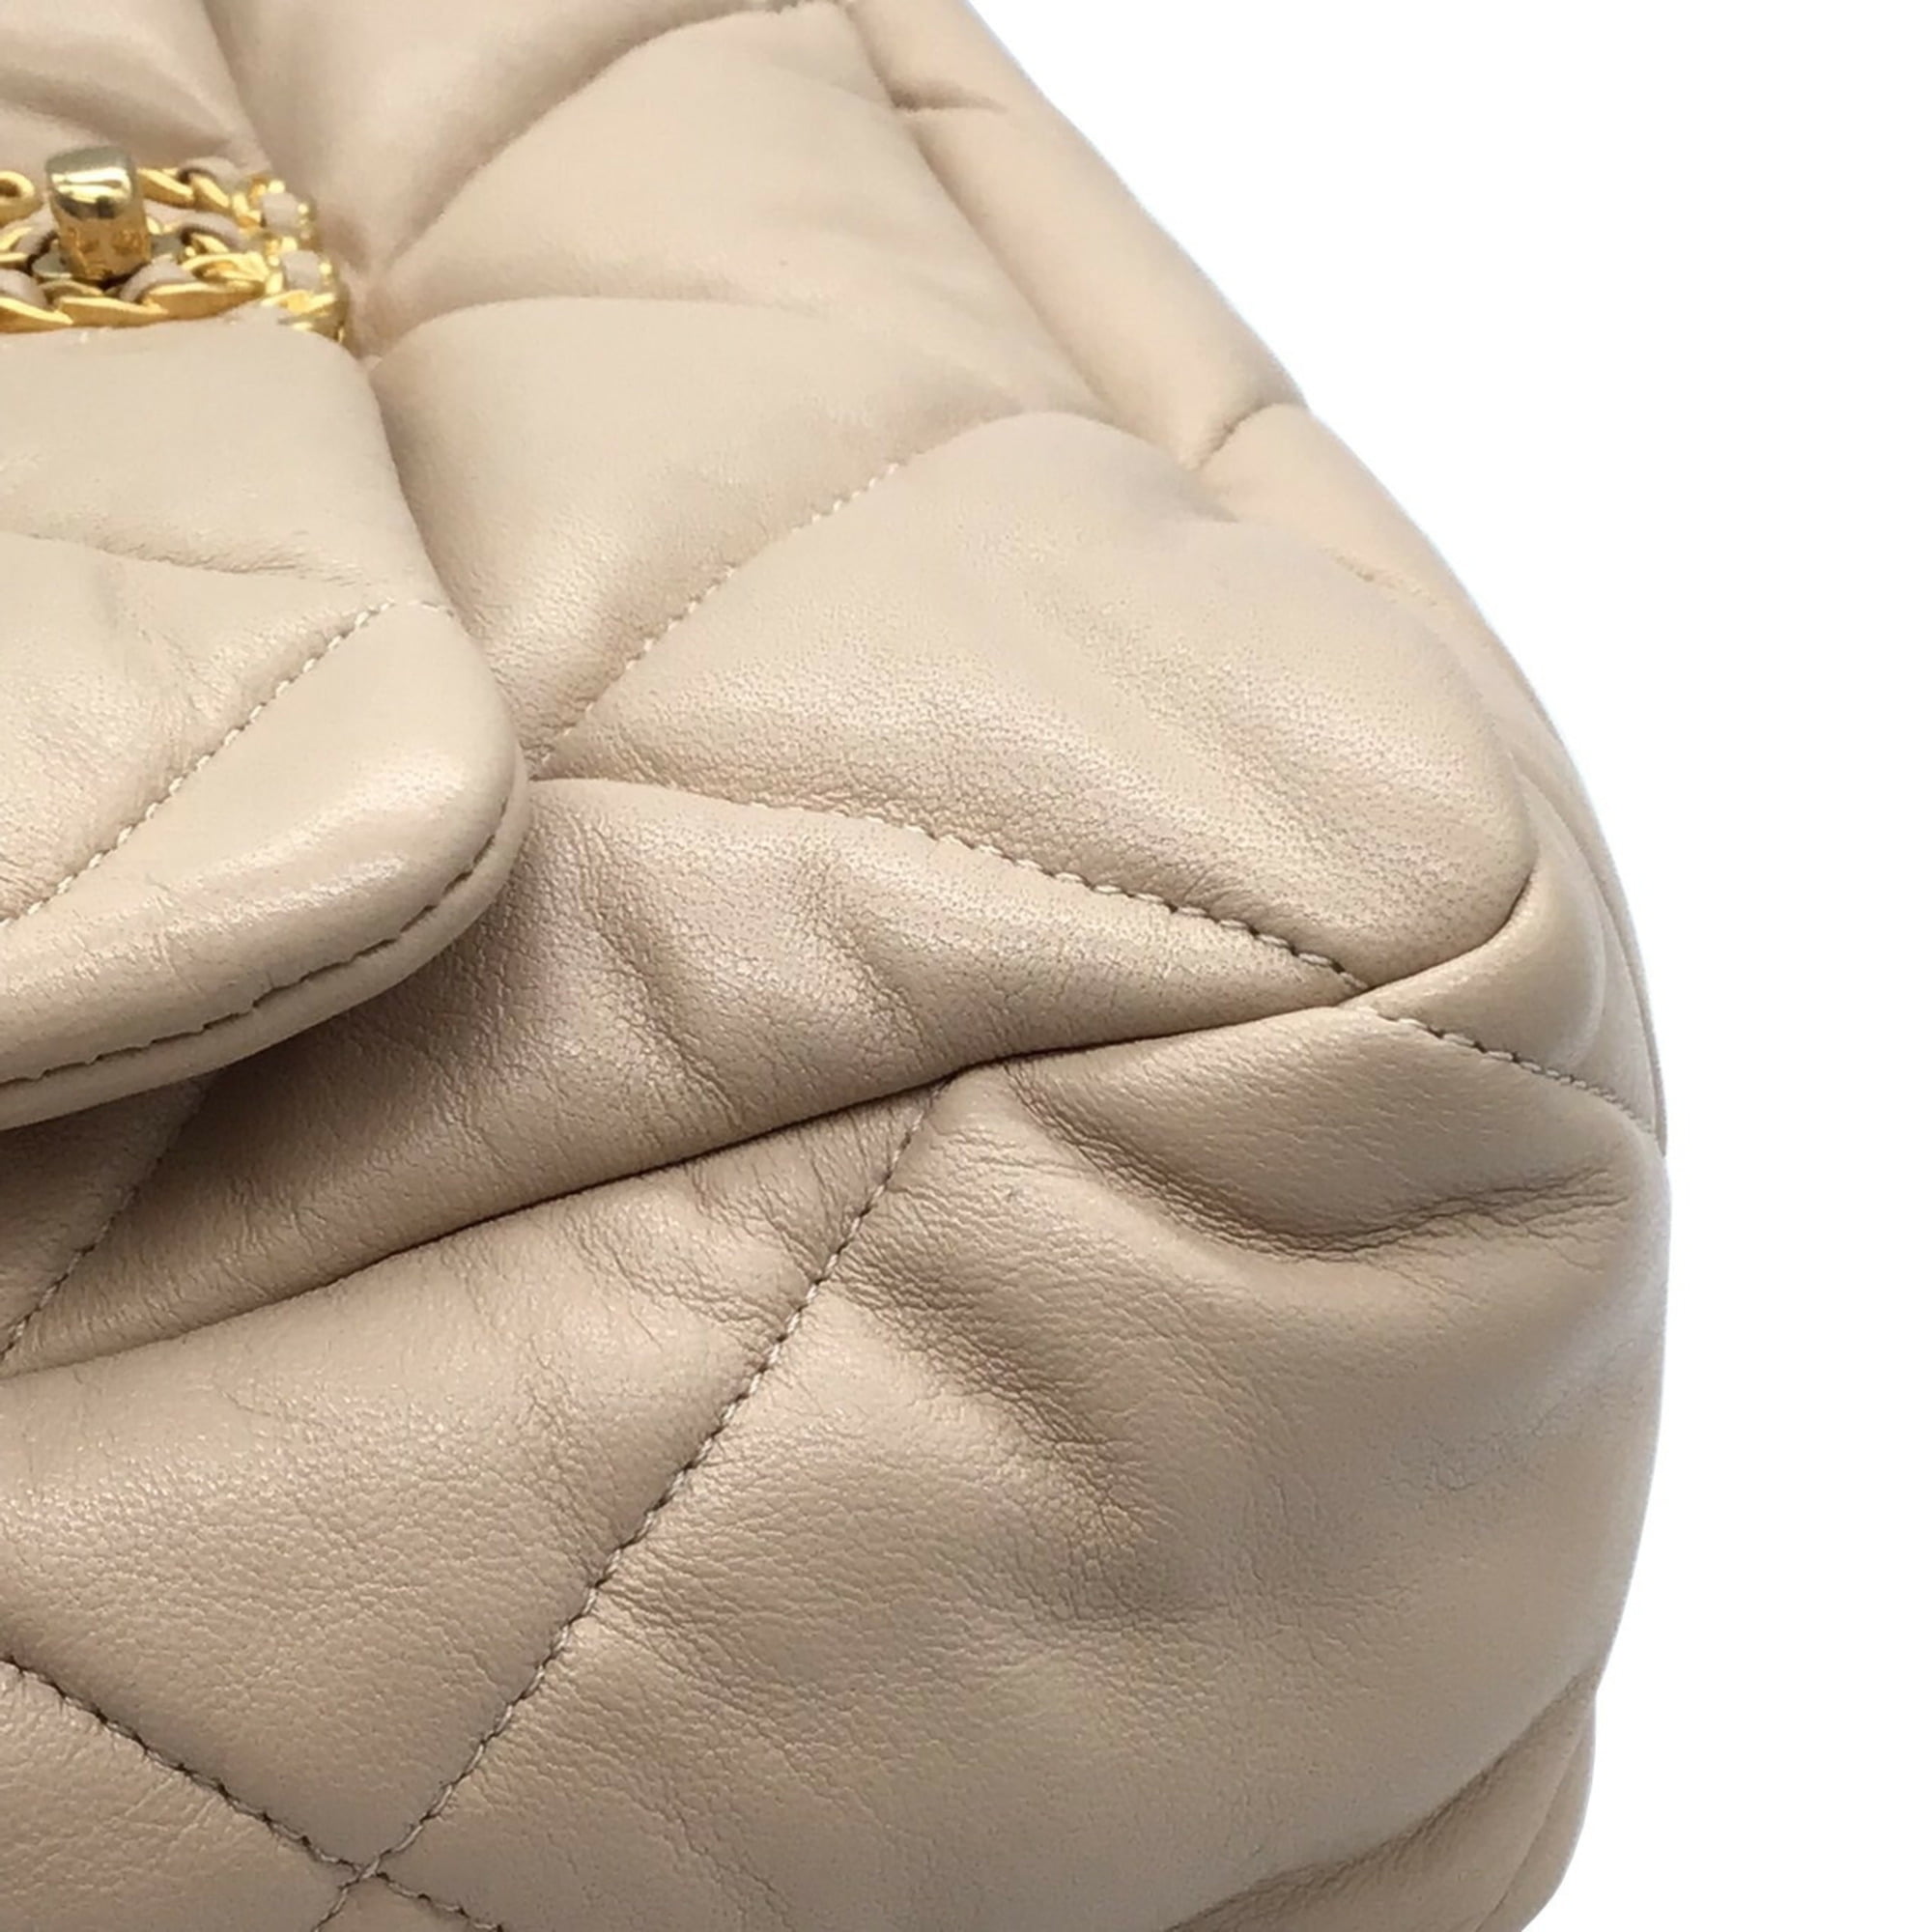 Chanel Pre-owned Large 19 Shoulder Bag